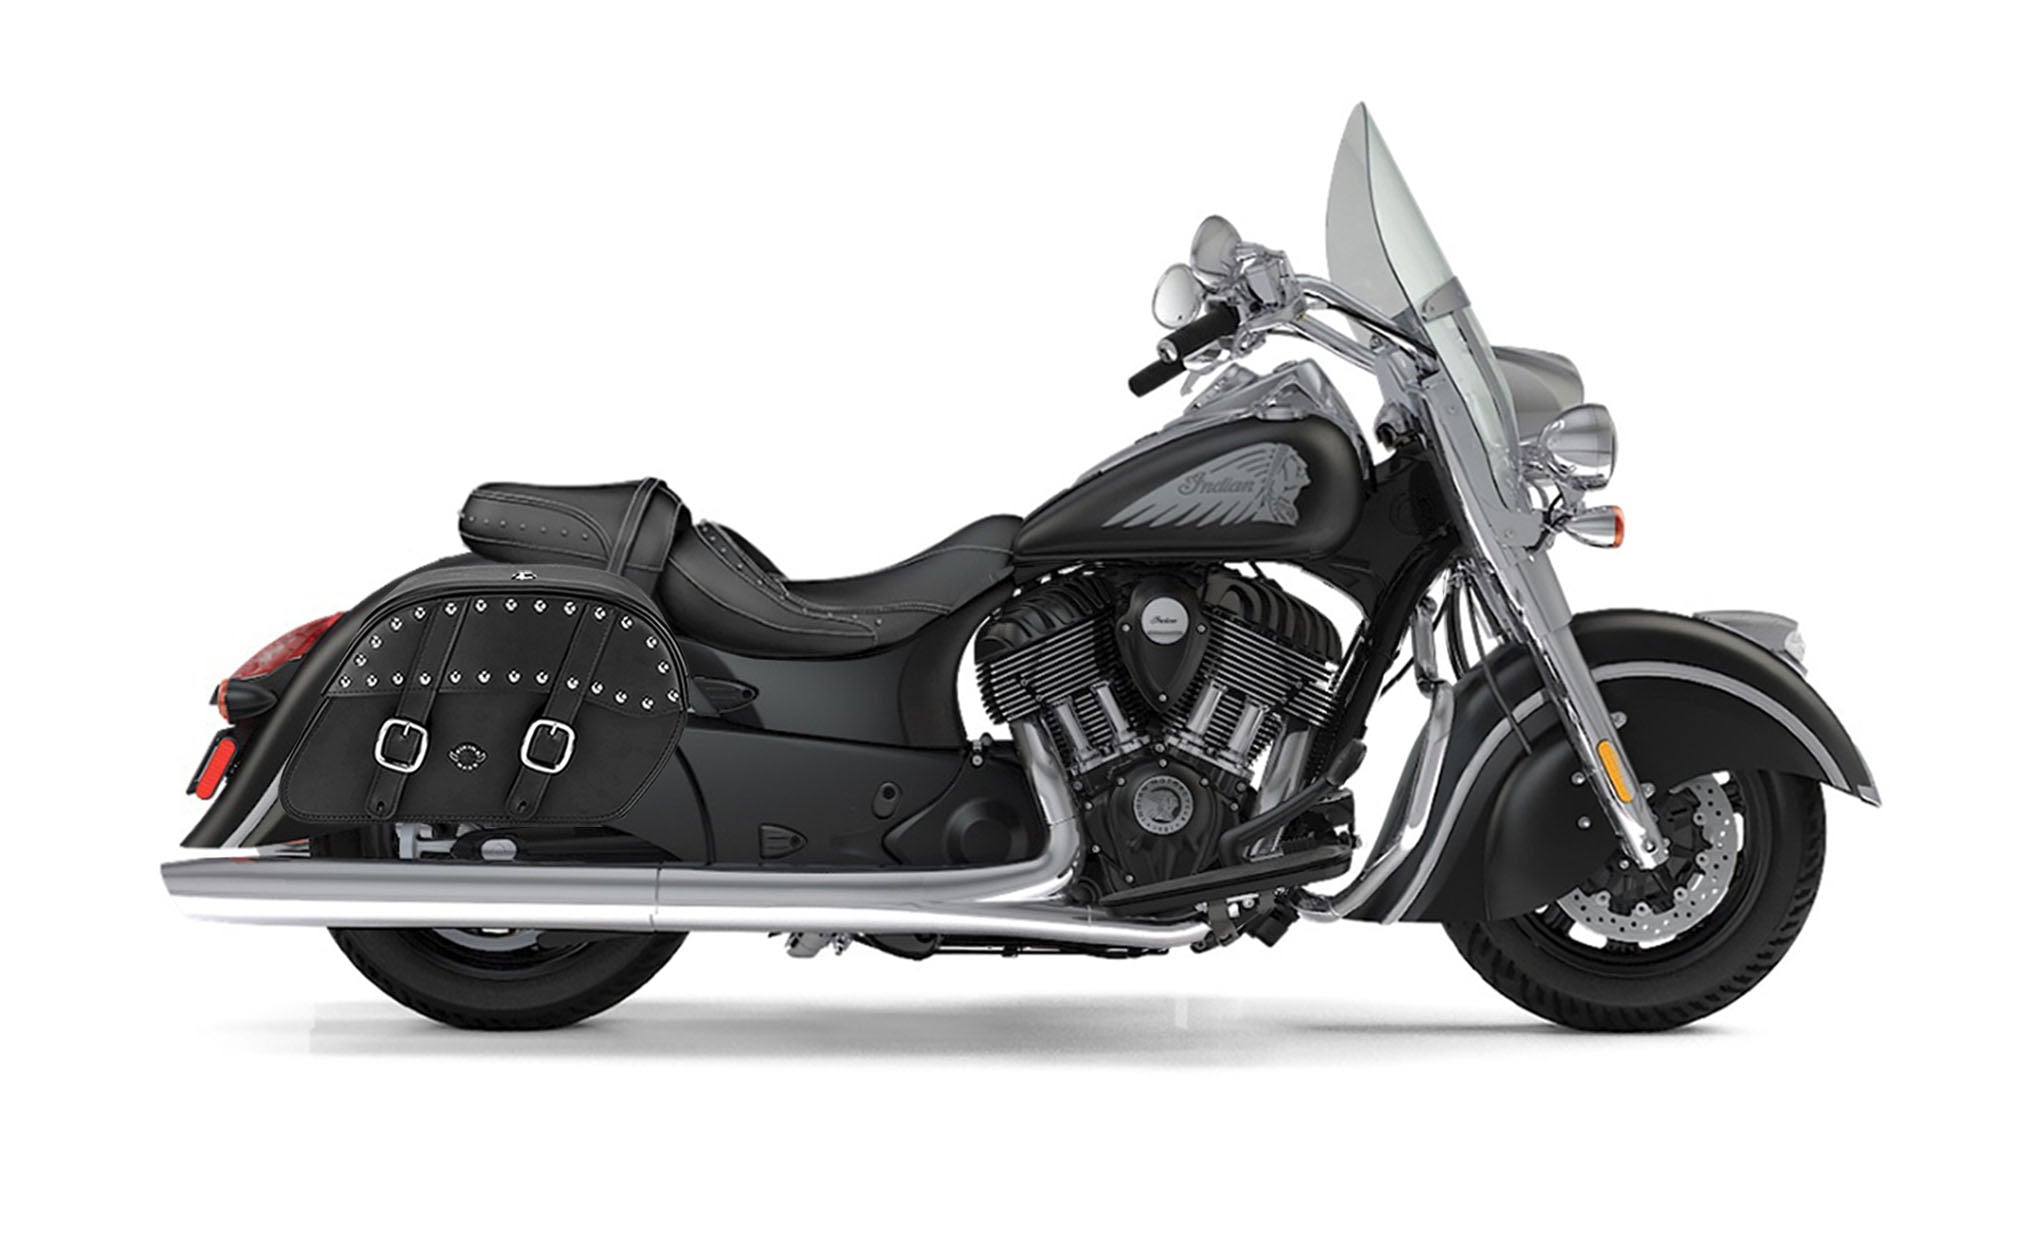 Viking Skarner Large Indian Springfield Leather Studded Motorcycle Saddlebags on Bike Photo @expand